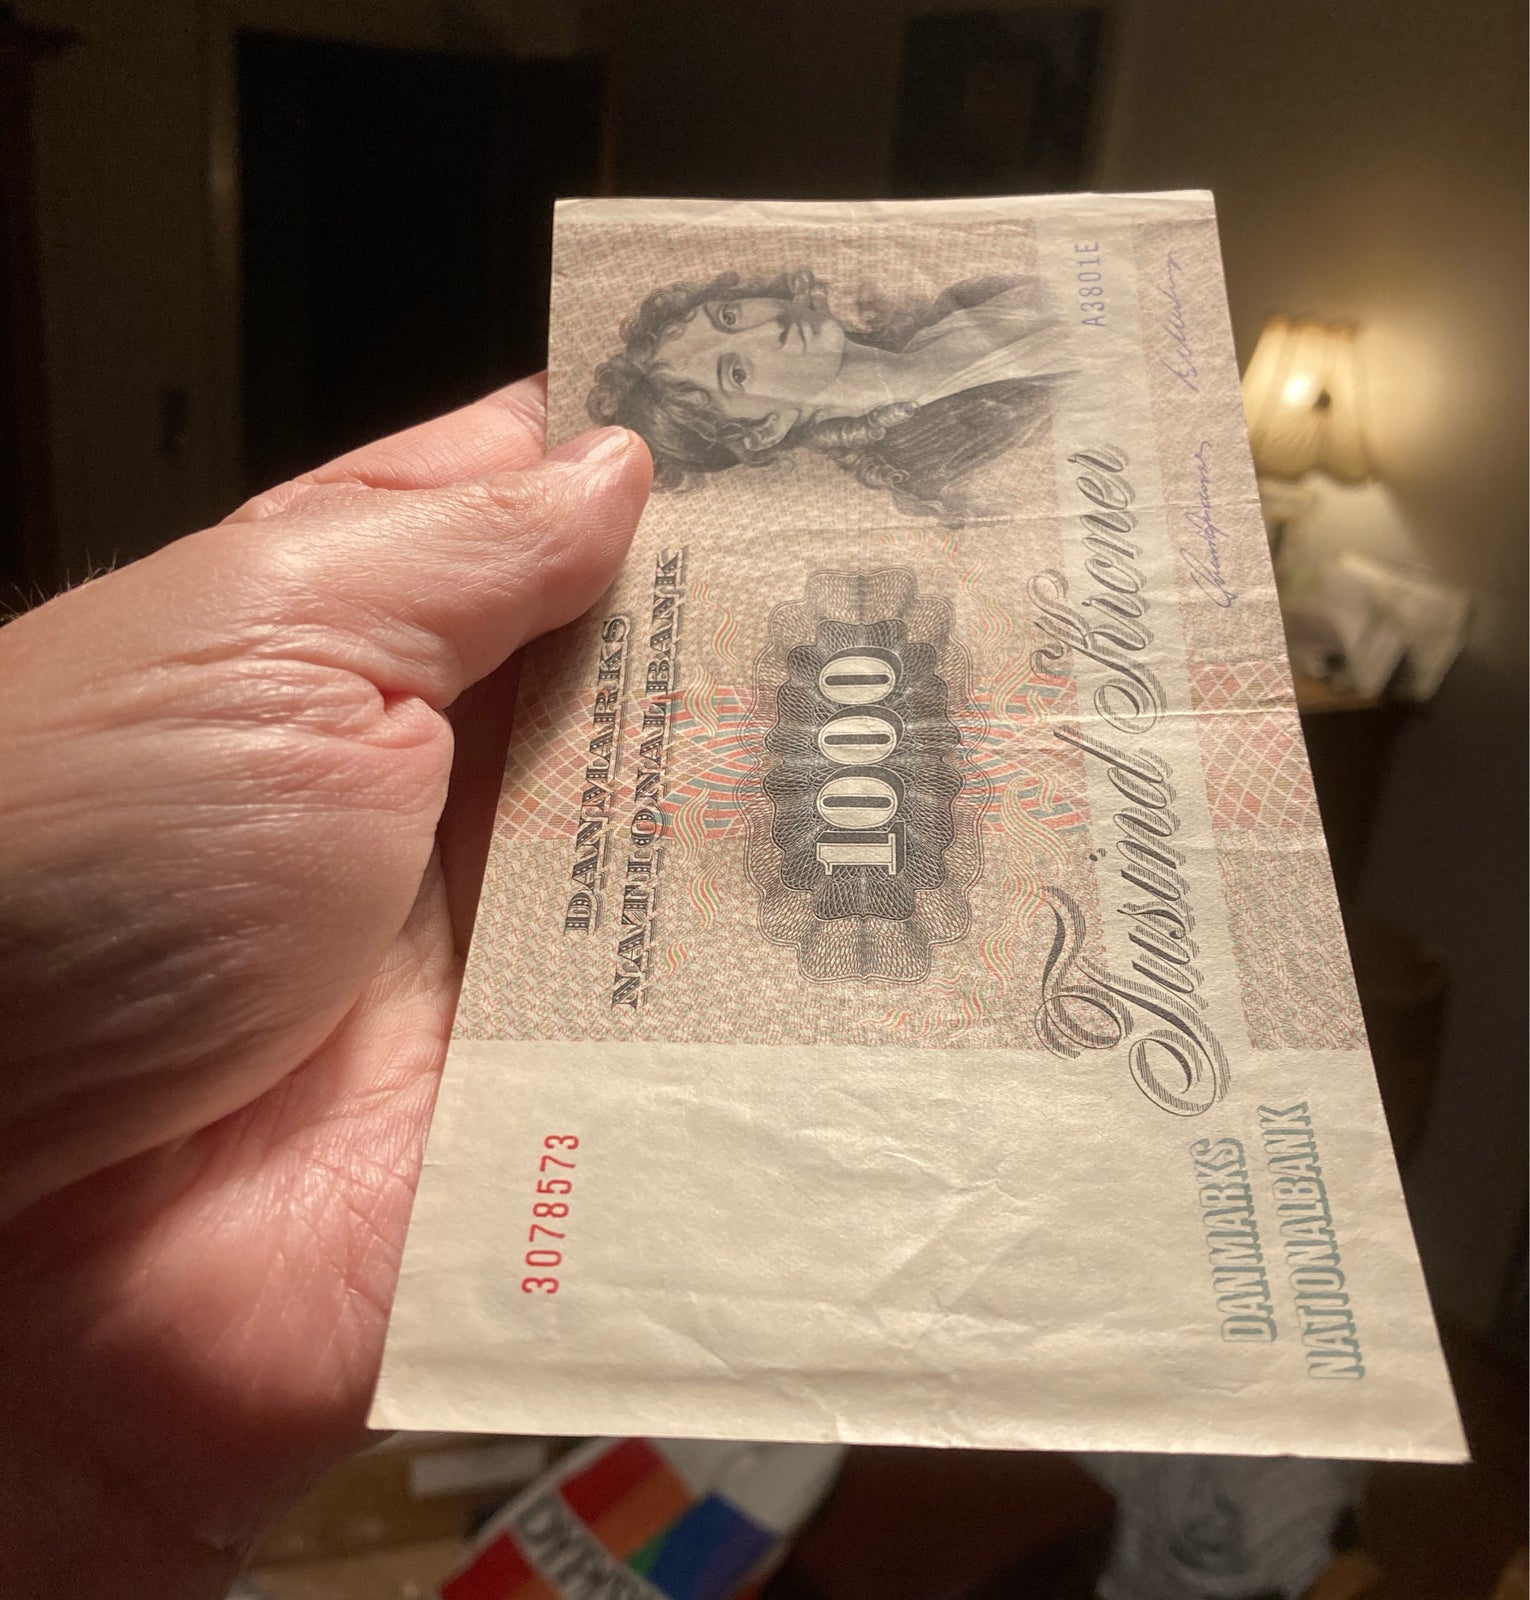 Danmark, sedler, 1000 kr